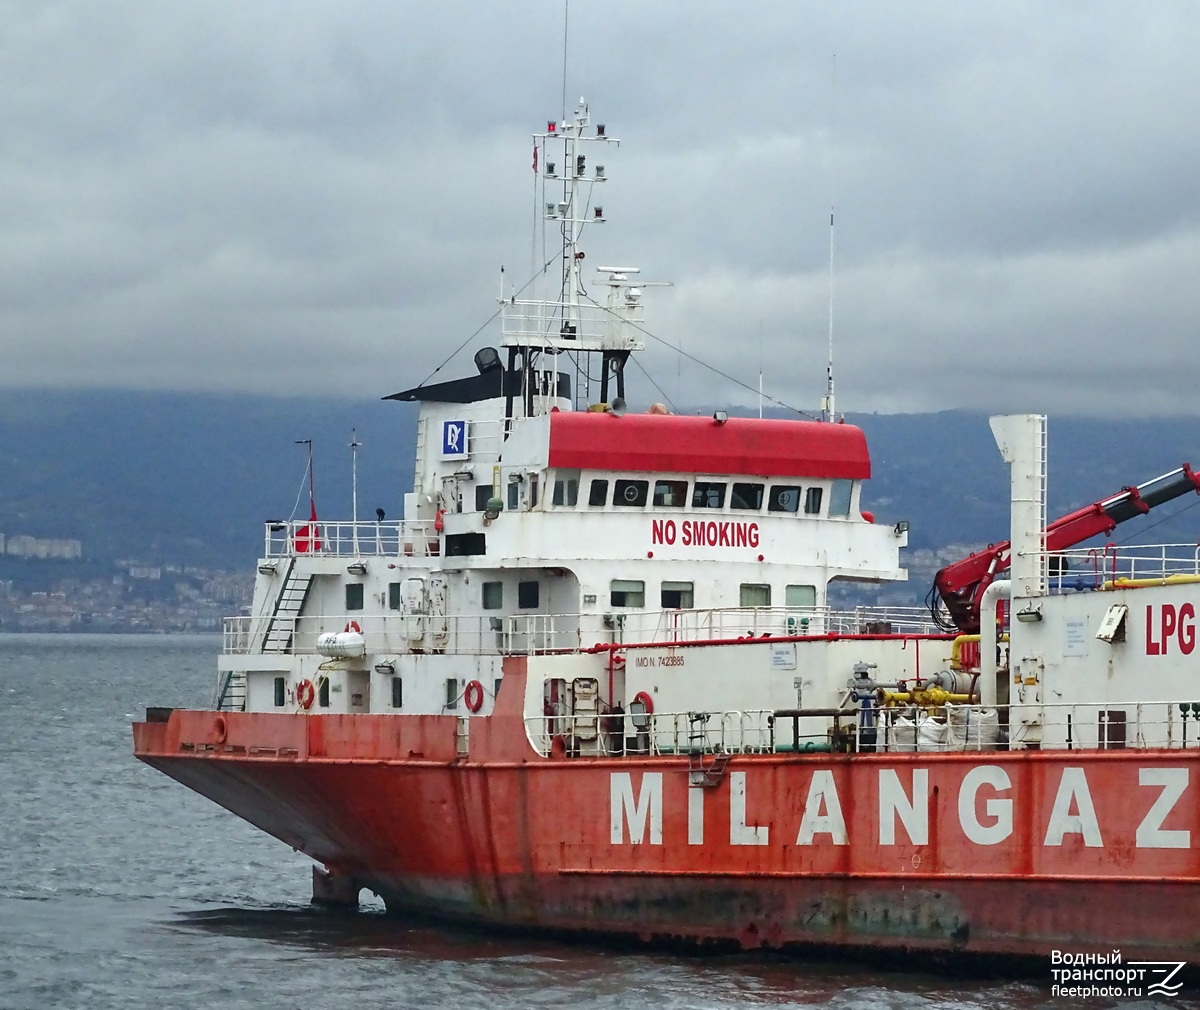 Milangaz-3. Vessel superstructures